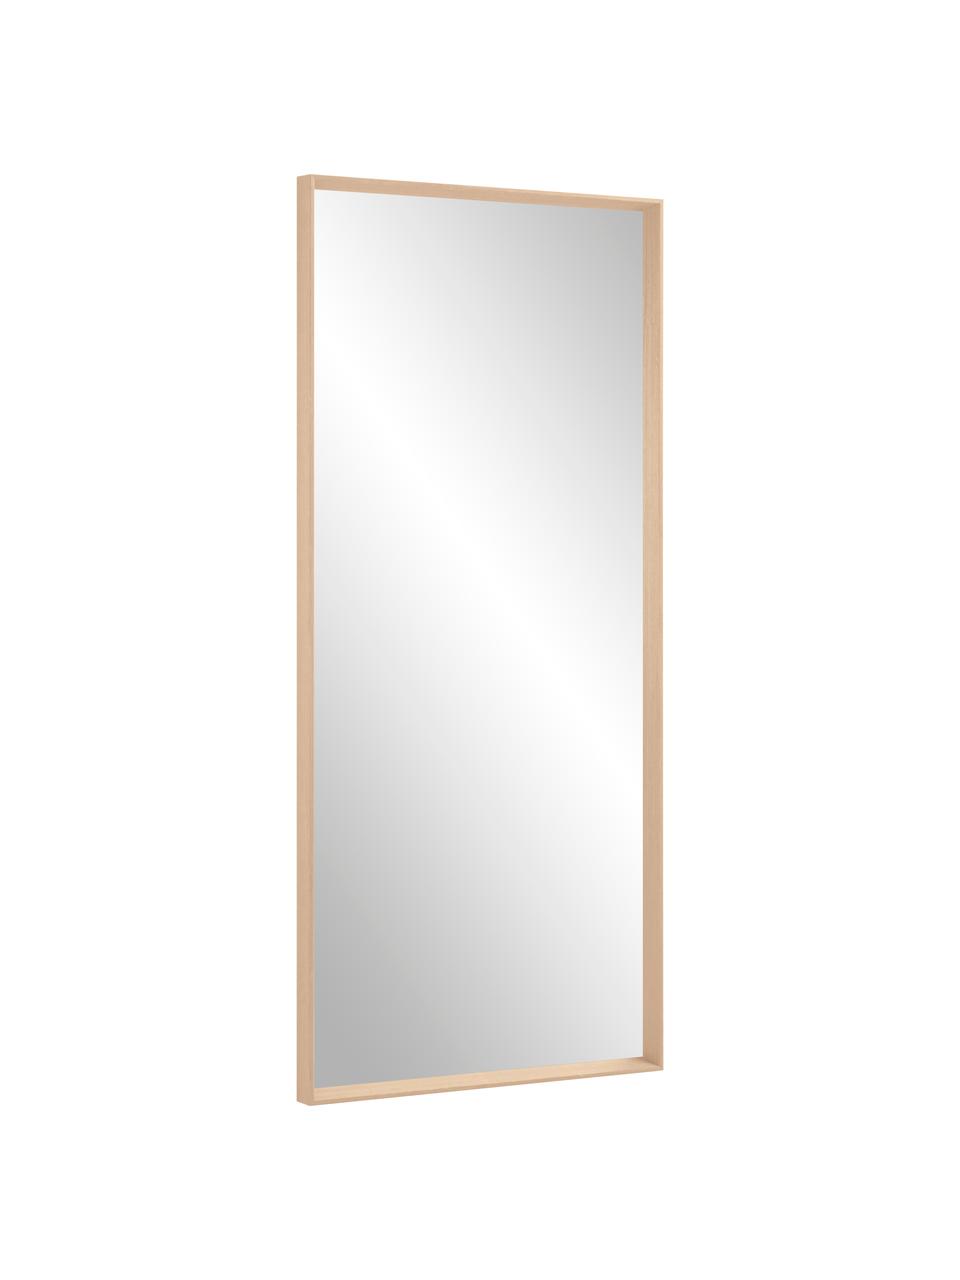 Eckiger Anlehnspiegel Nerina mit beigem Holzrahmen, Rahmen: Holz, Spiegelfläche: Spiegelglas, Beige, B 80 x H 180 cm